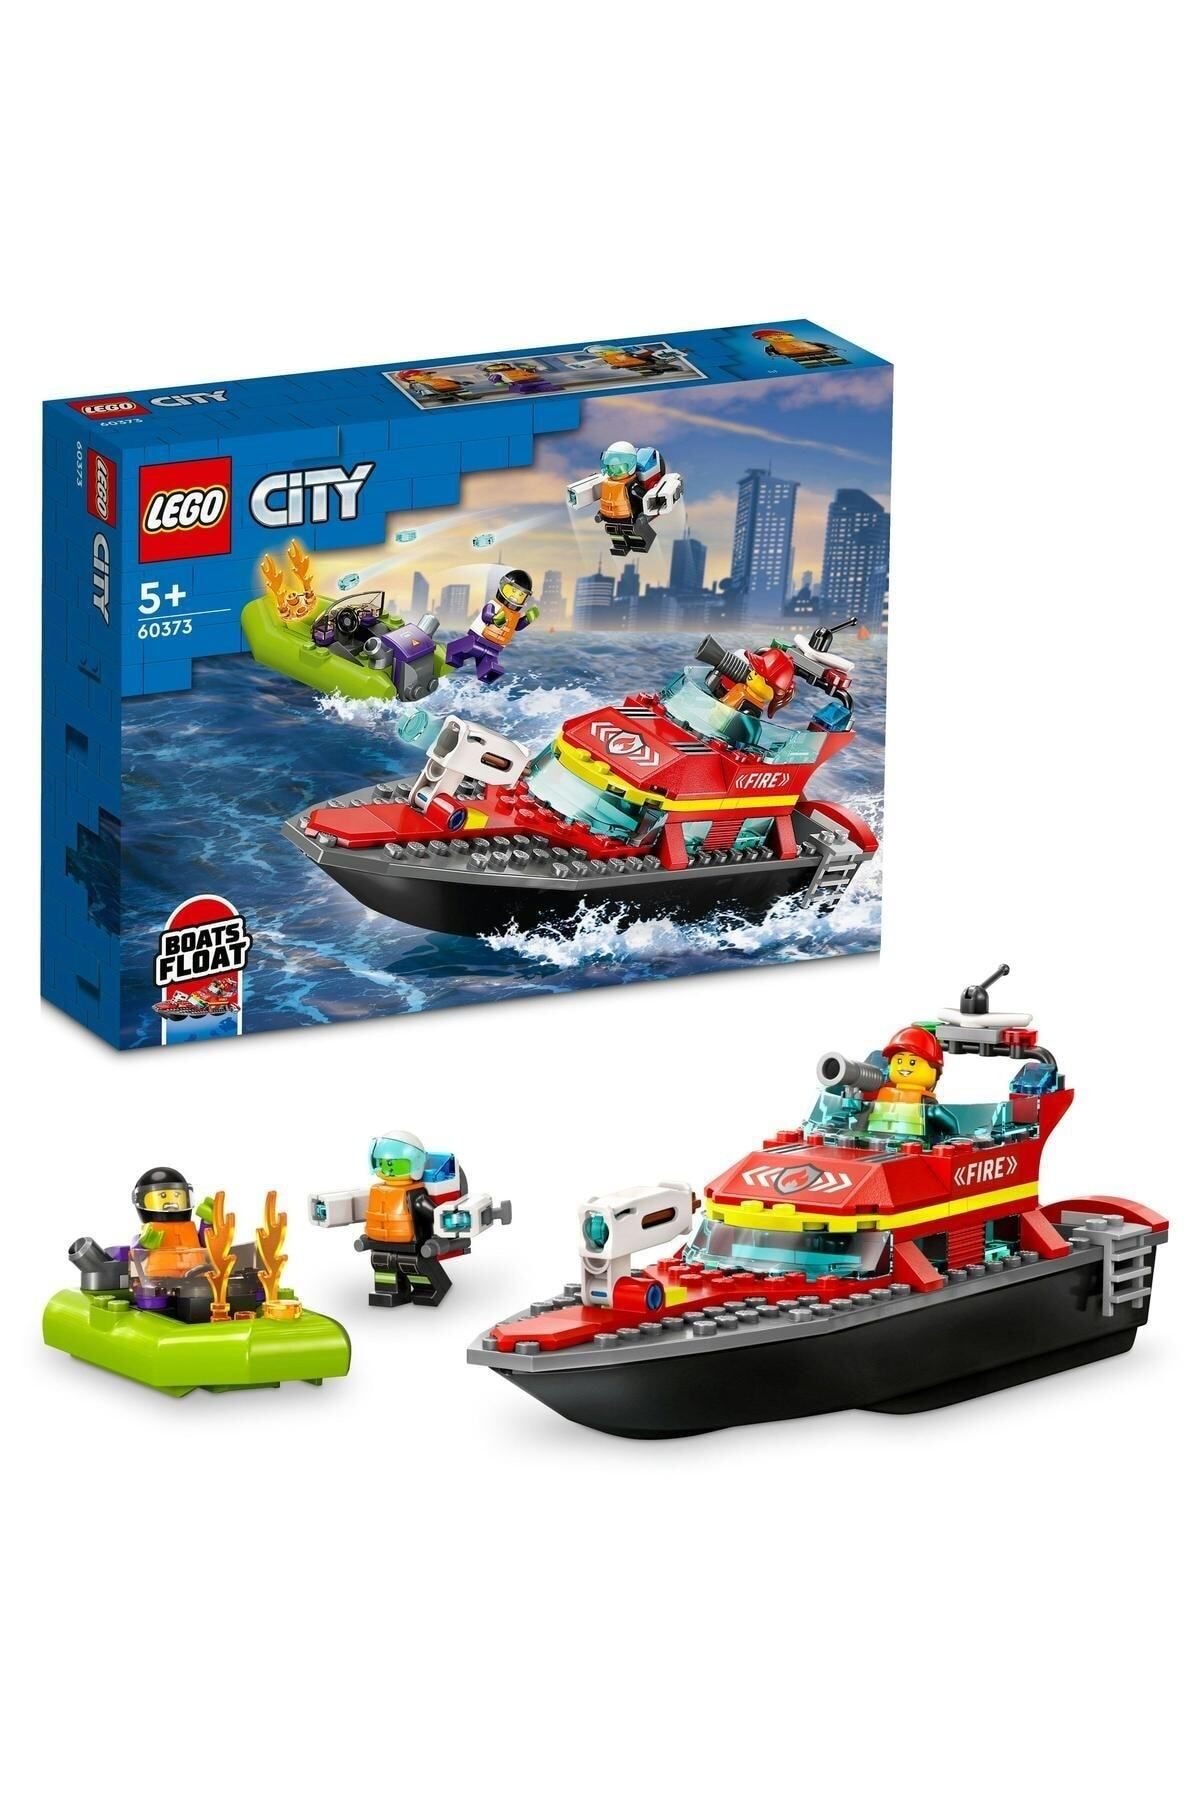 LEGO ® City İtfaiye Kurtarma Teknesi 60373 - 5 Yaş ve Üzeri Çocuklar için Yapım Seti (144 Parça)